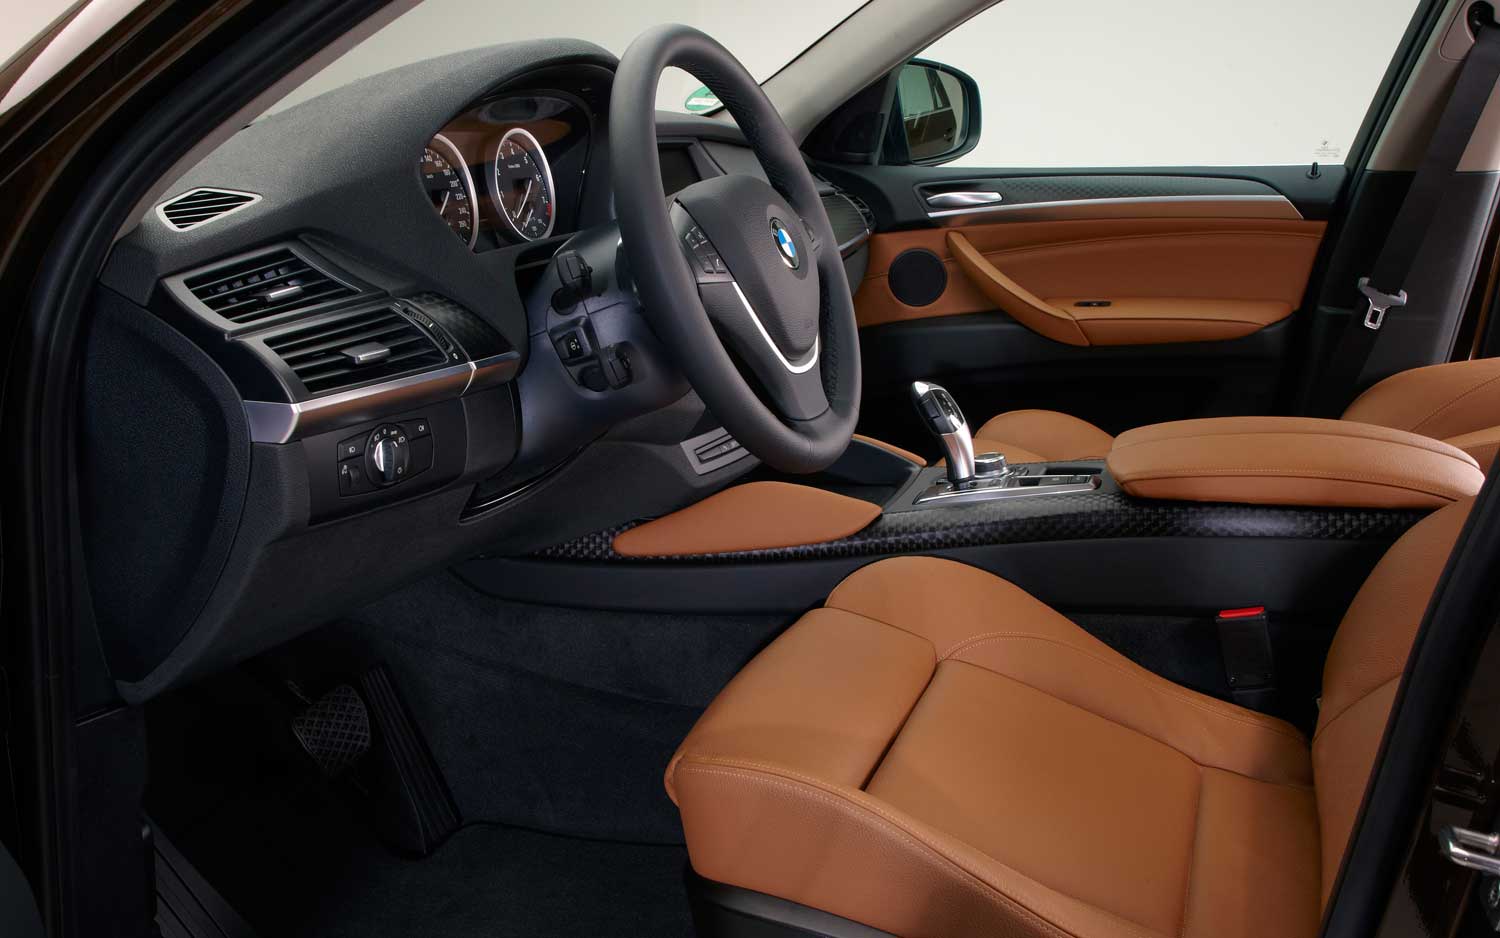 2013 BMW X6 Dashboard Interior View